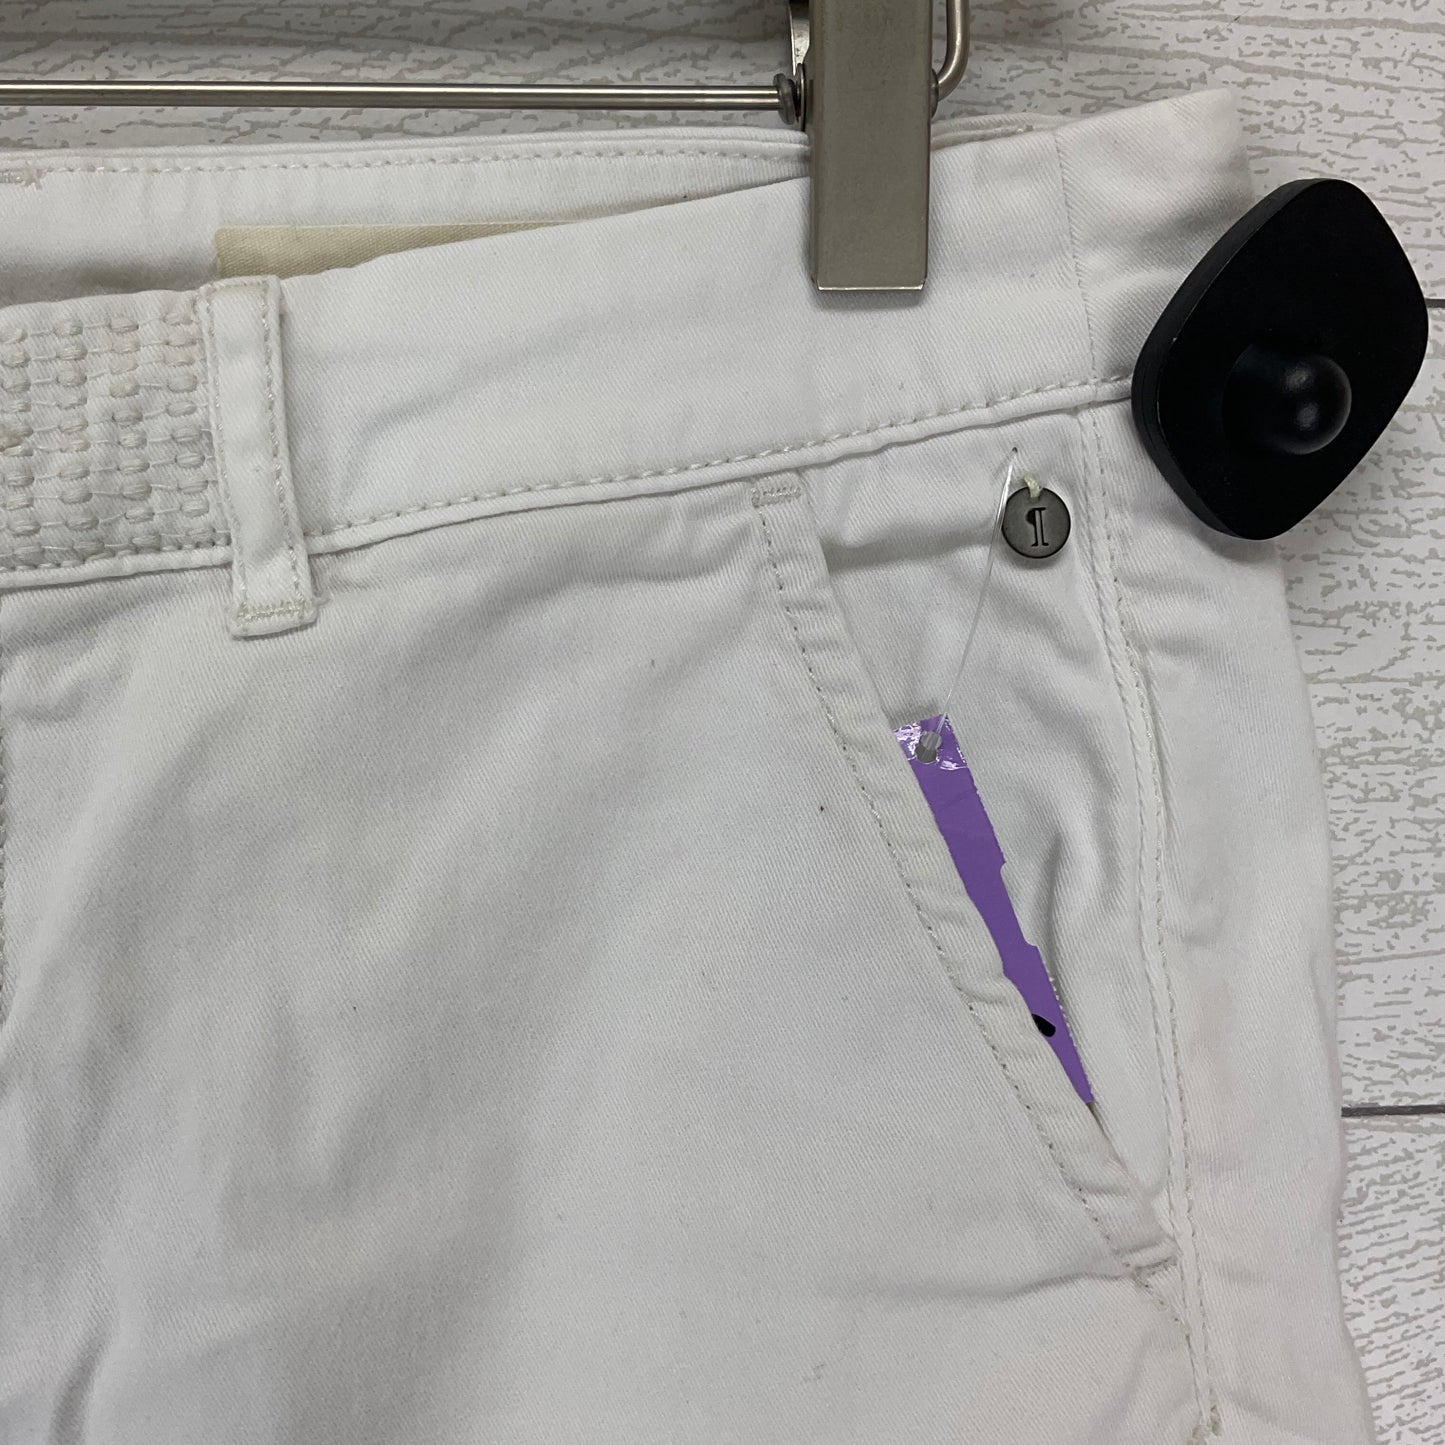 White Shorts Pilcro, Size 4